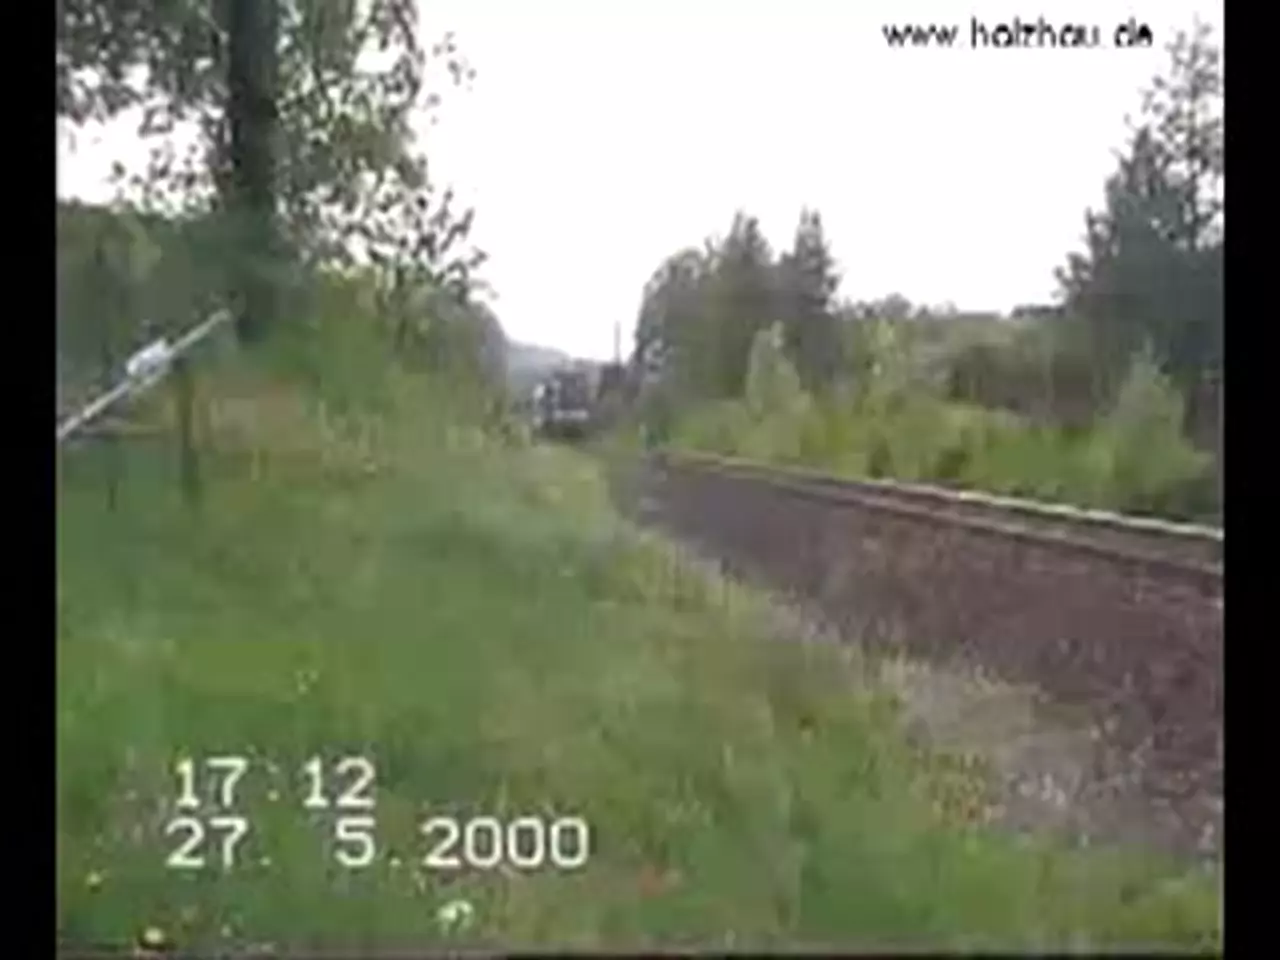 Foto: Stilllegung der Eisenbahn-Strecke Freiberg-Holzhau 27.5.2000